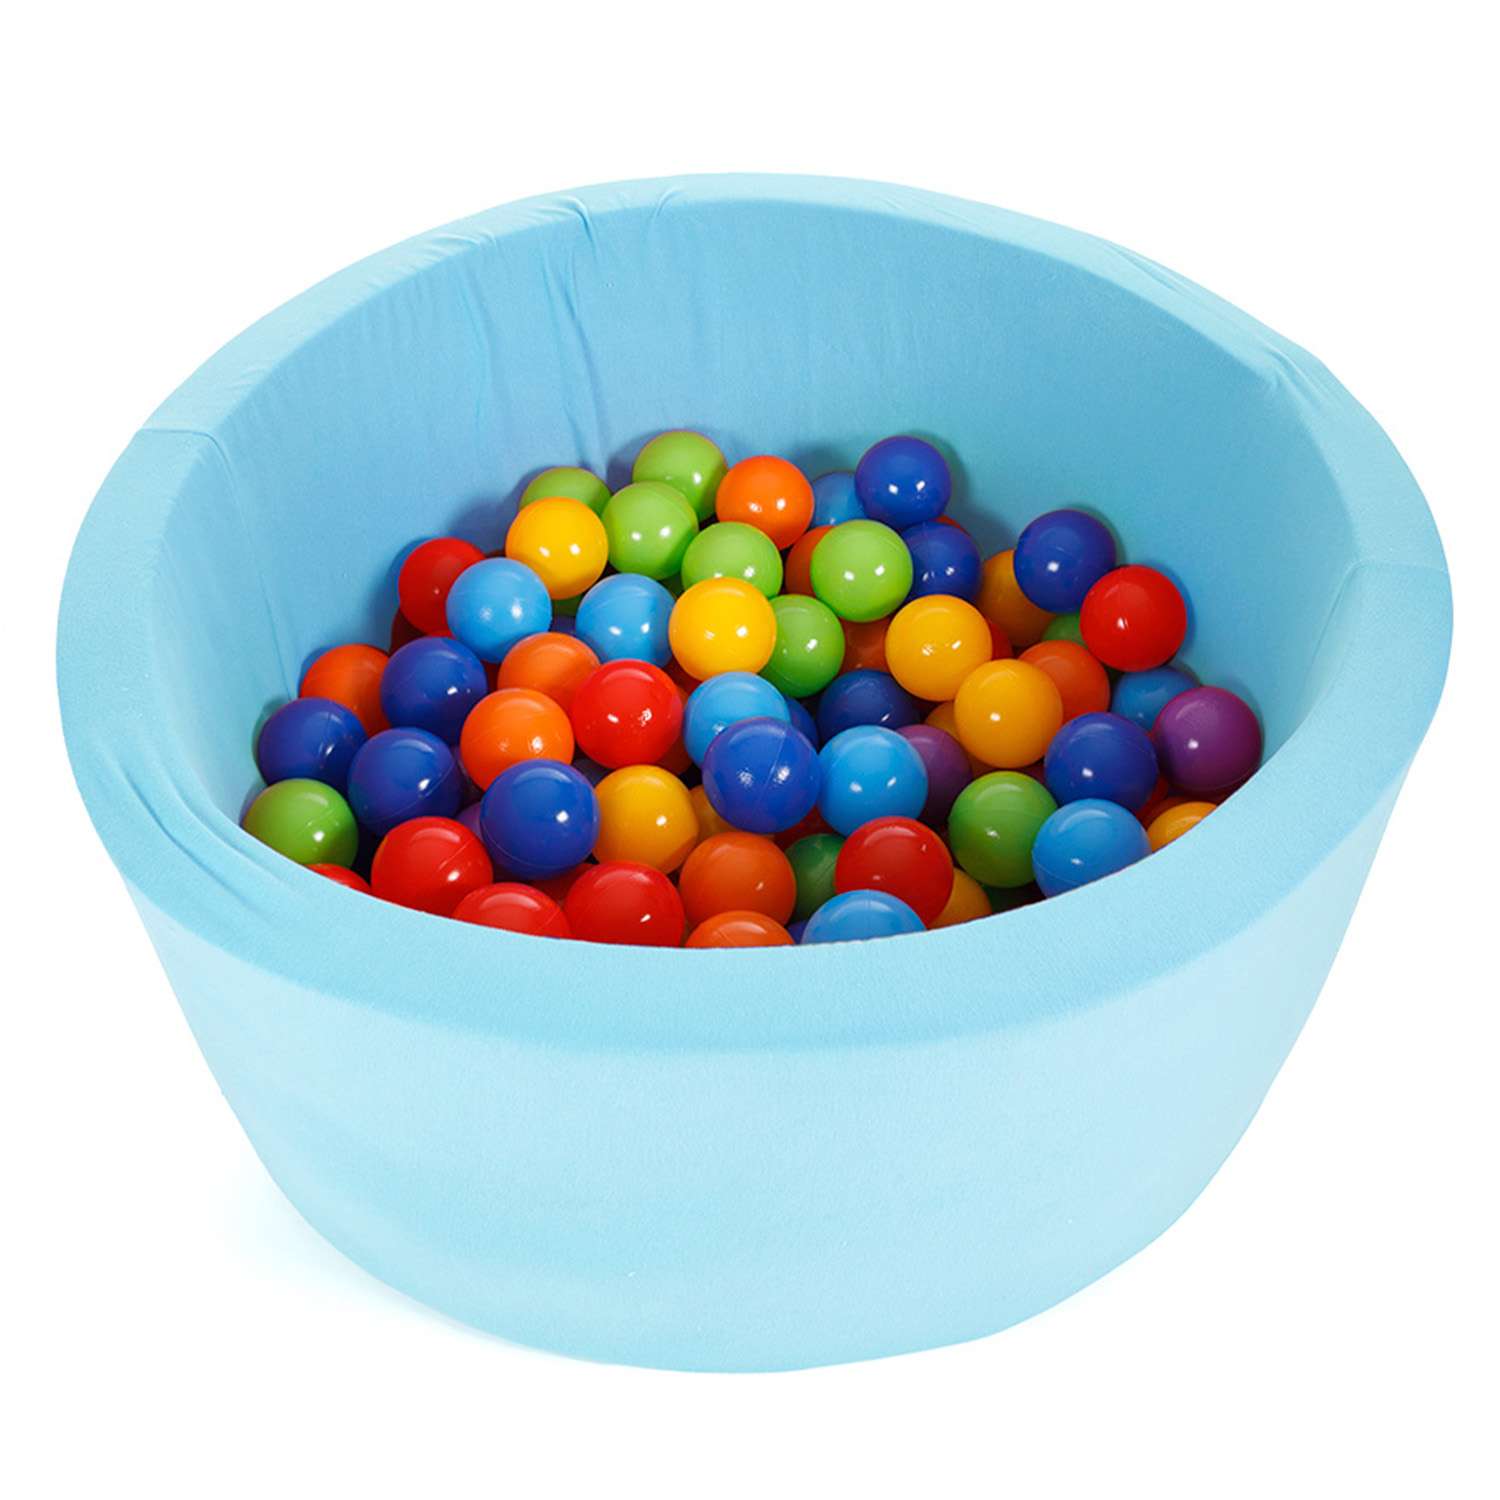 Сухой бассейн Тутси игровой с комплектом шаров поролон голубой 160 шт d8 см 85х40 см - фото 2